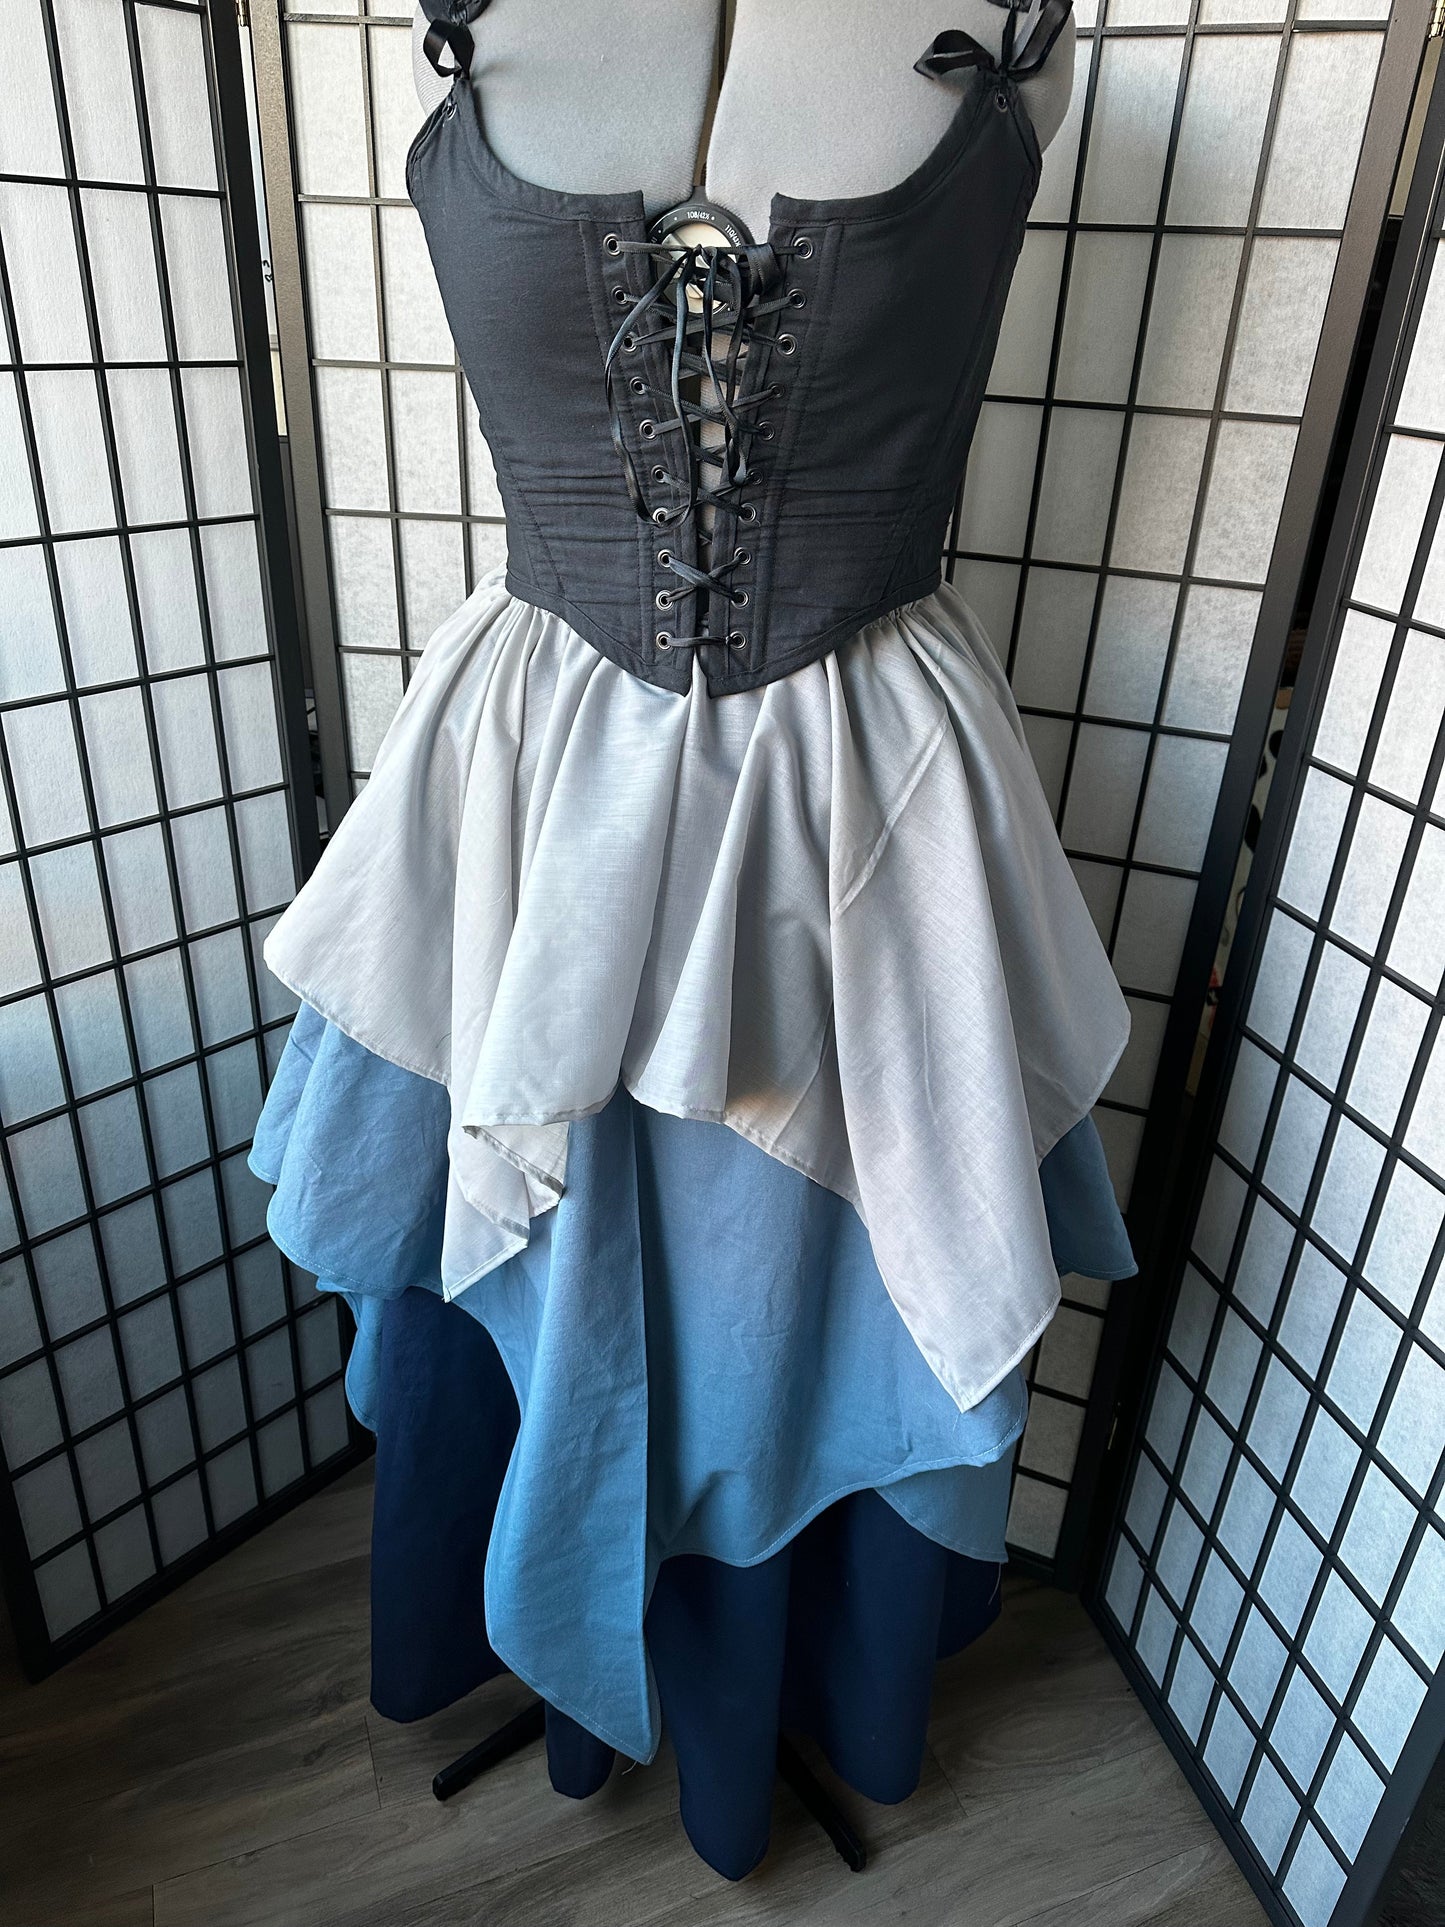 Fairy Skirt (Custom Order)